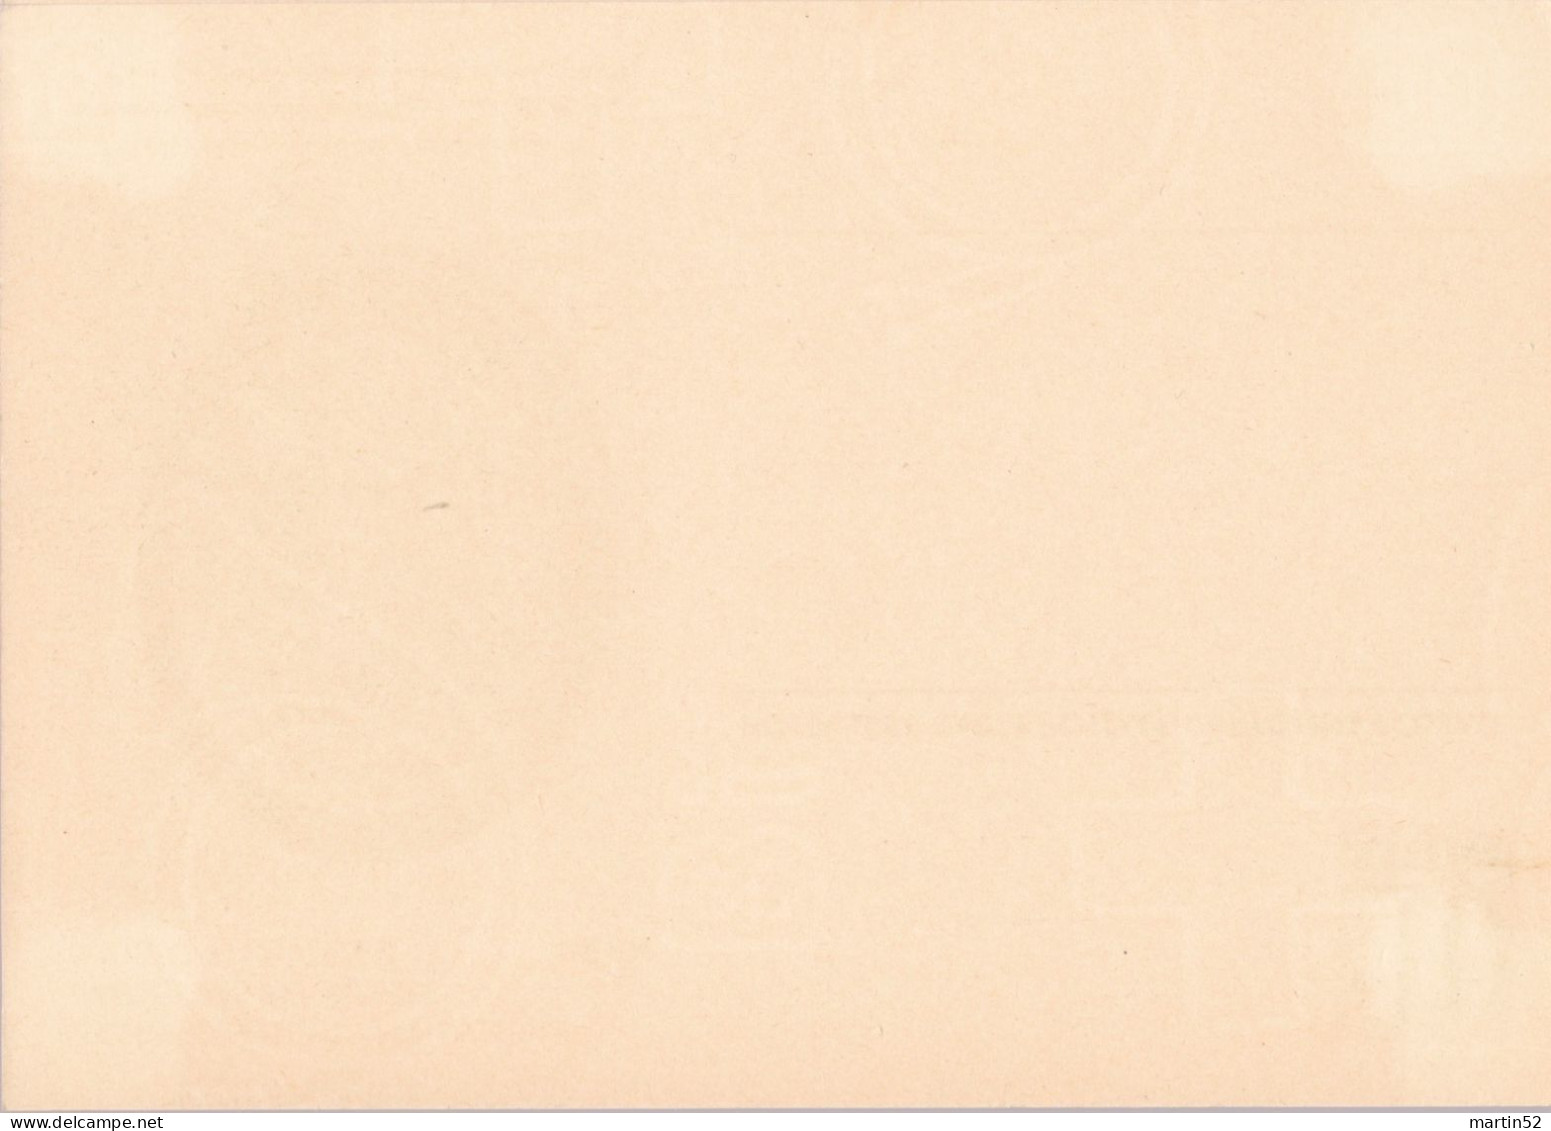 Schweiz Suisse 1950: Bild-PK POSTMUSEUM CPI MUSÉE POSTALE Zumstein-N° 183 A TELEGRAPHIE 1868 Ungelaufen / Non Circulé - Telegrafo